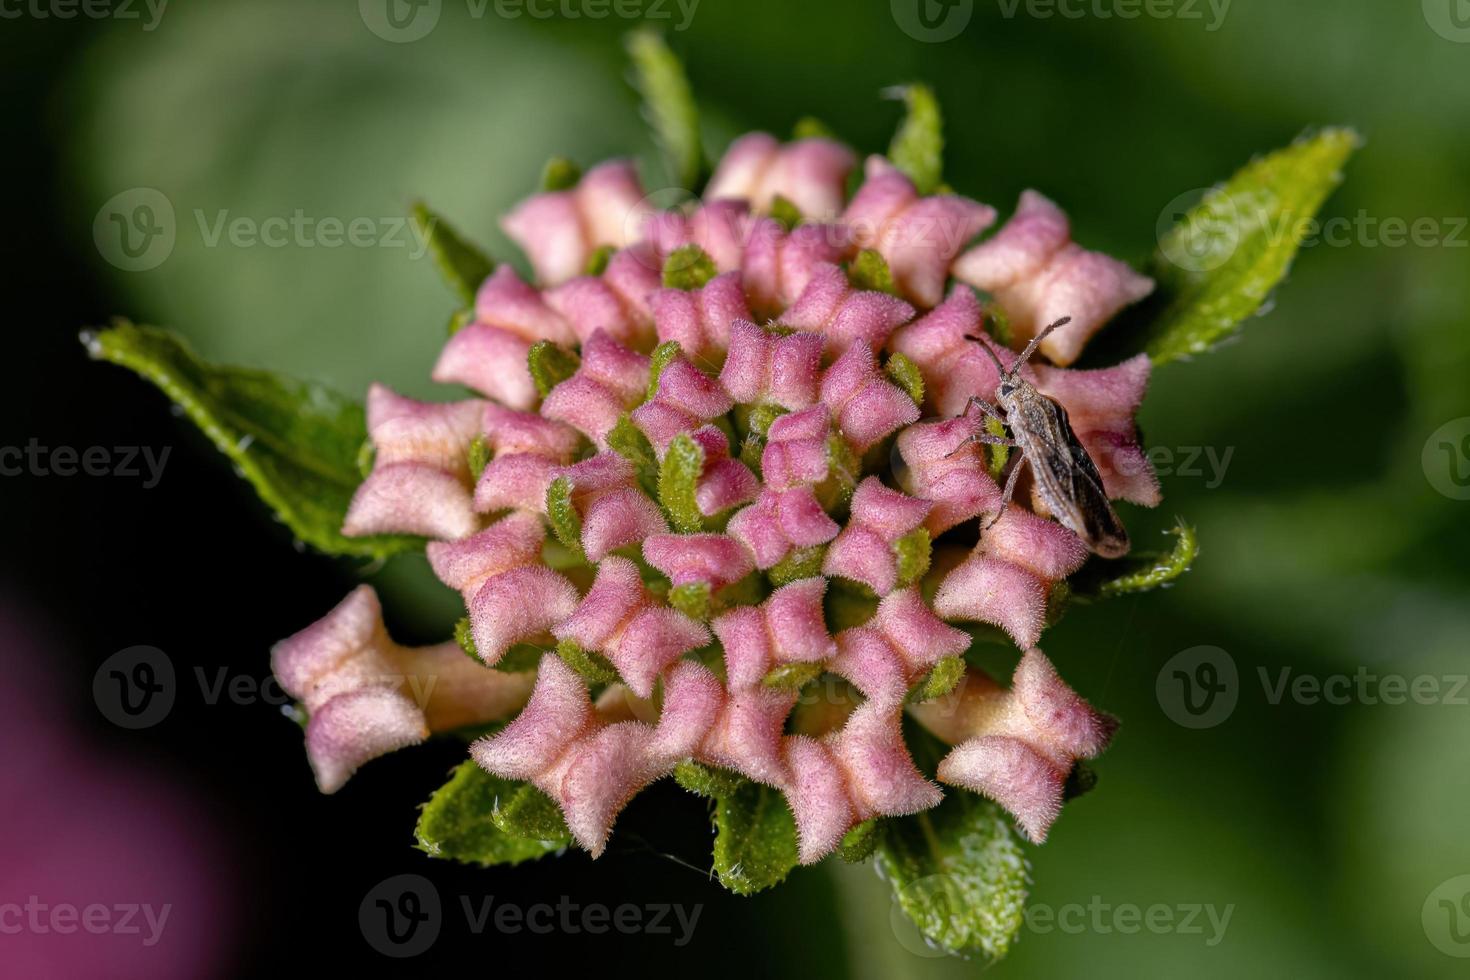 flor de lantana comum foto